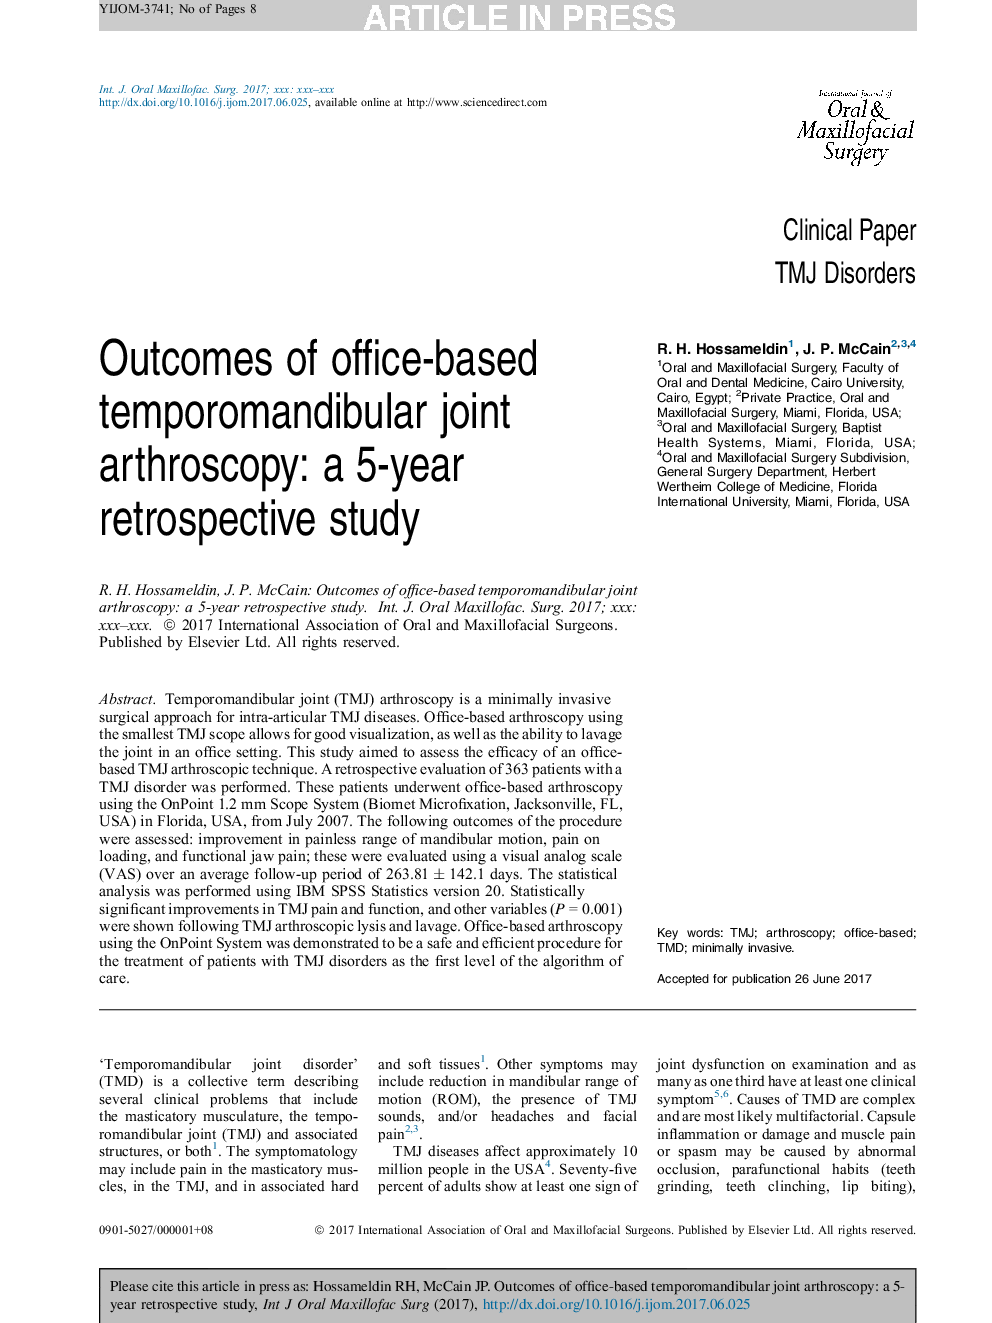 نتایج حاصل از آرتروسکوپی مفصلی بایستی در دفتر: یک مطالعه گذشته نویسی 5 ساله 